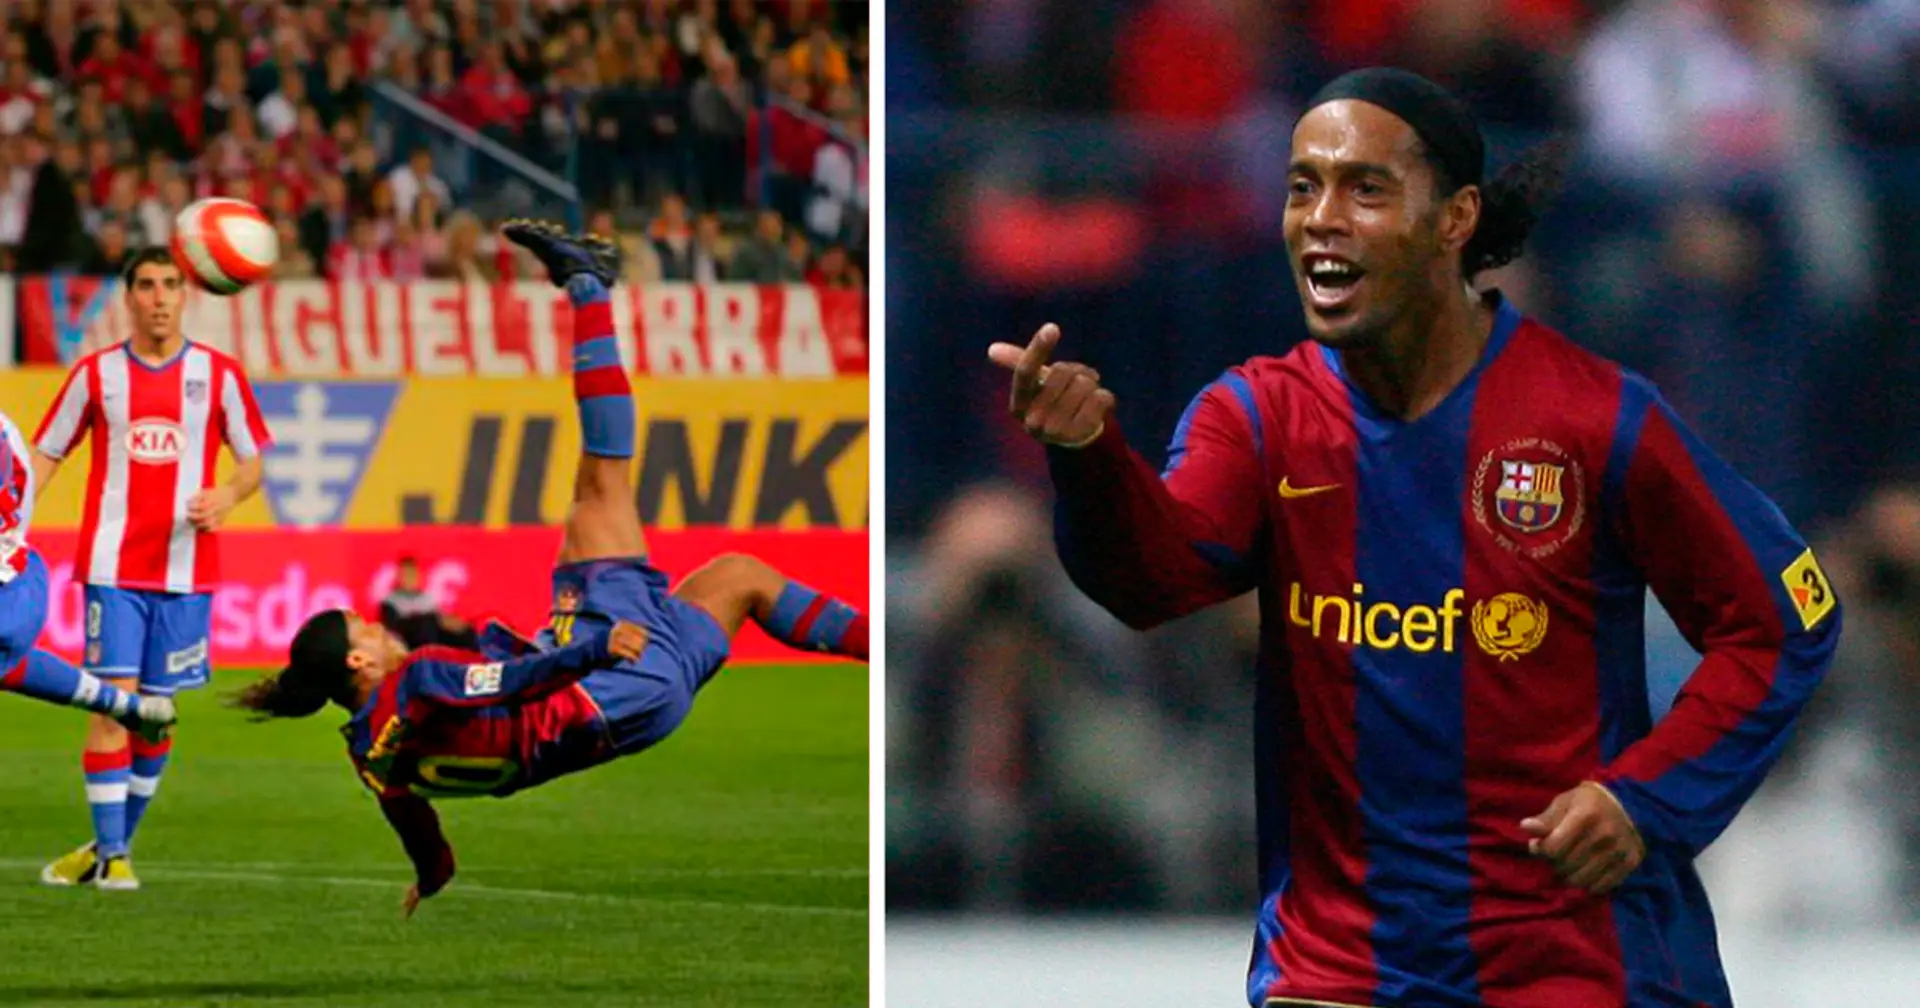 Il y a 16 ans aujourd'hui, Ronaldinho marquait son dernier but avec Barcelone - et quel but !